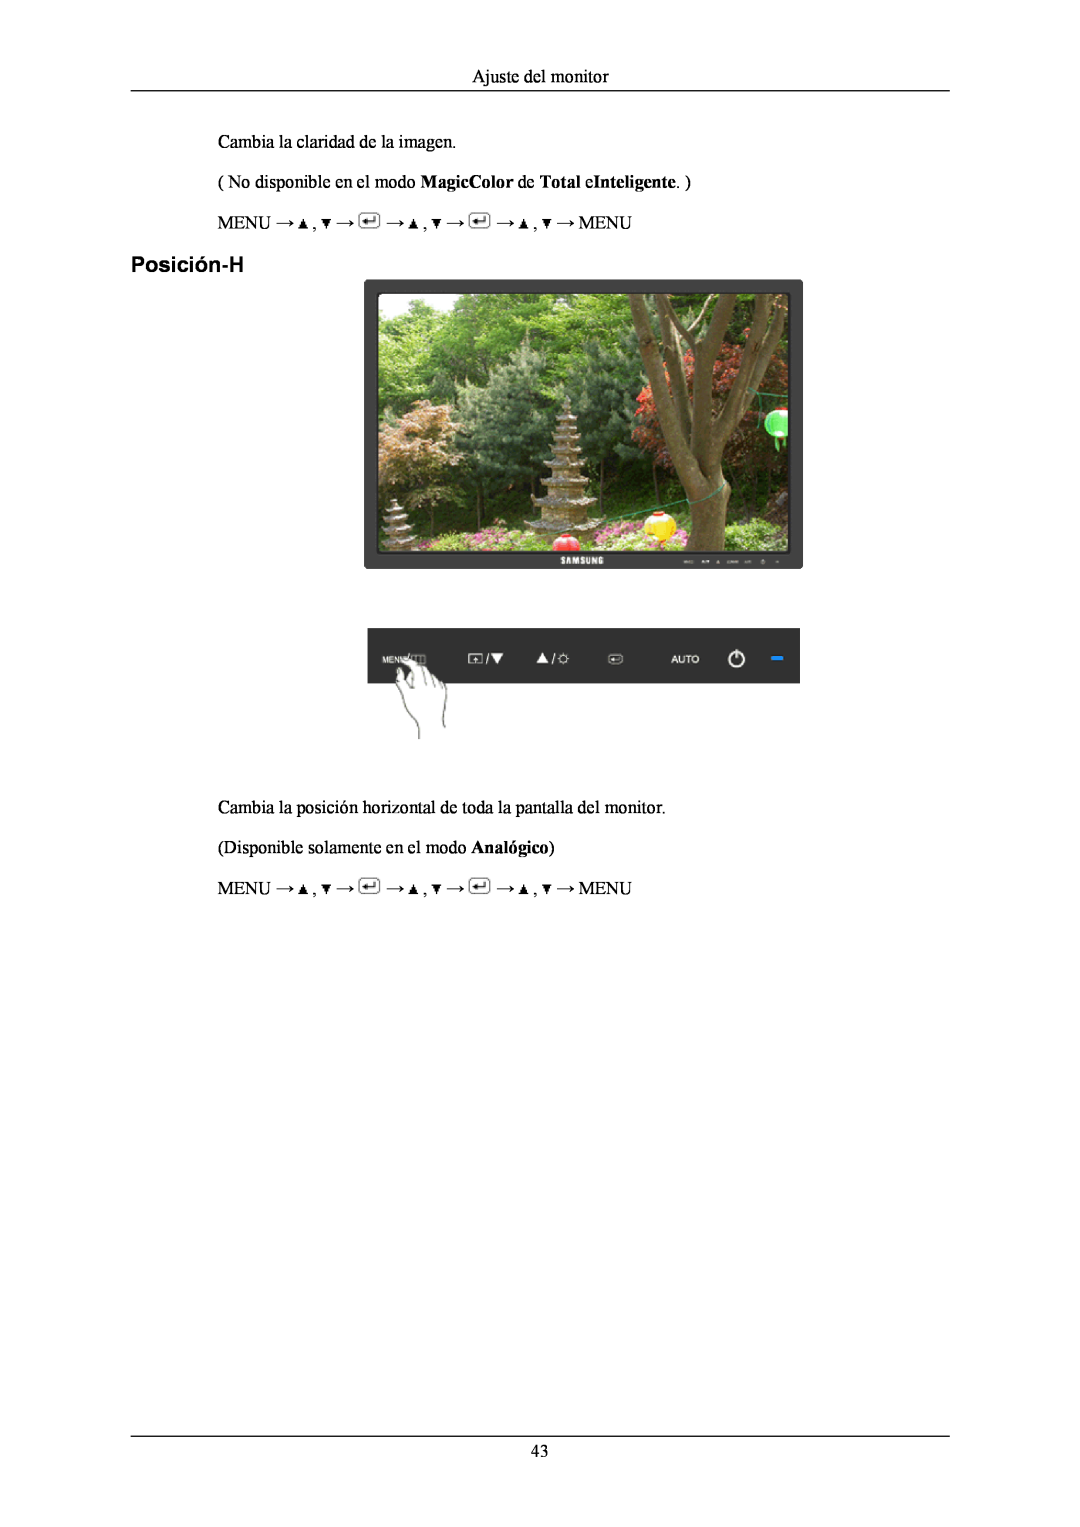 Samsung LS20MYNKBD/EDC manual Posición-H, Ajuste del monitor Cambia la claridad de la imagen, Menu → , → → , → → , → Menu 